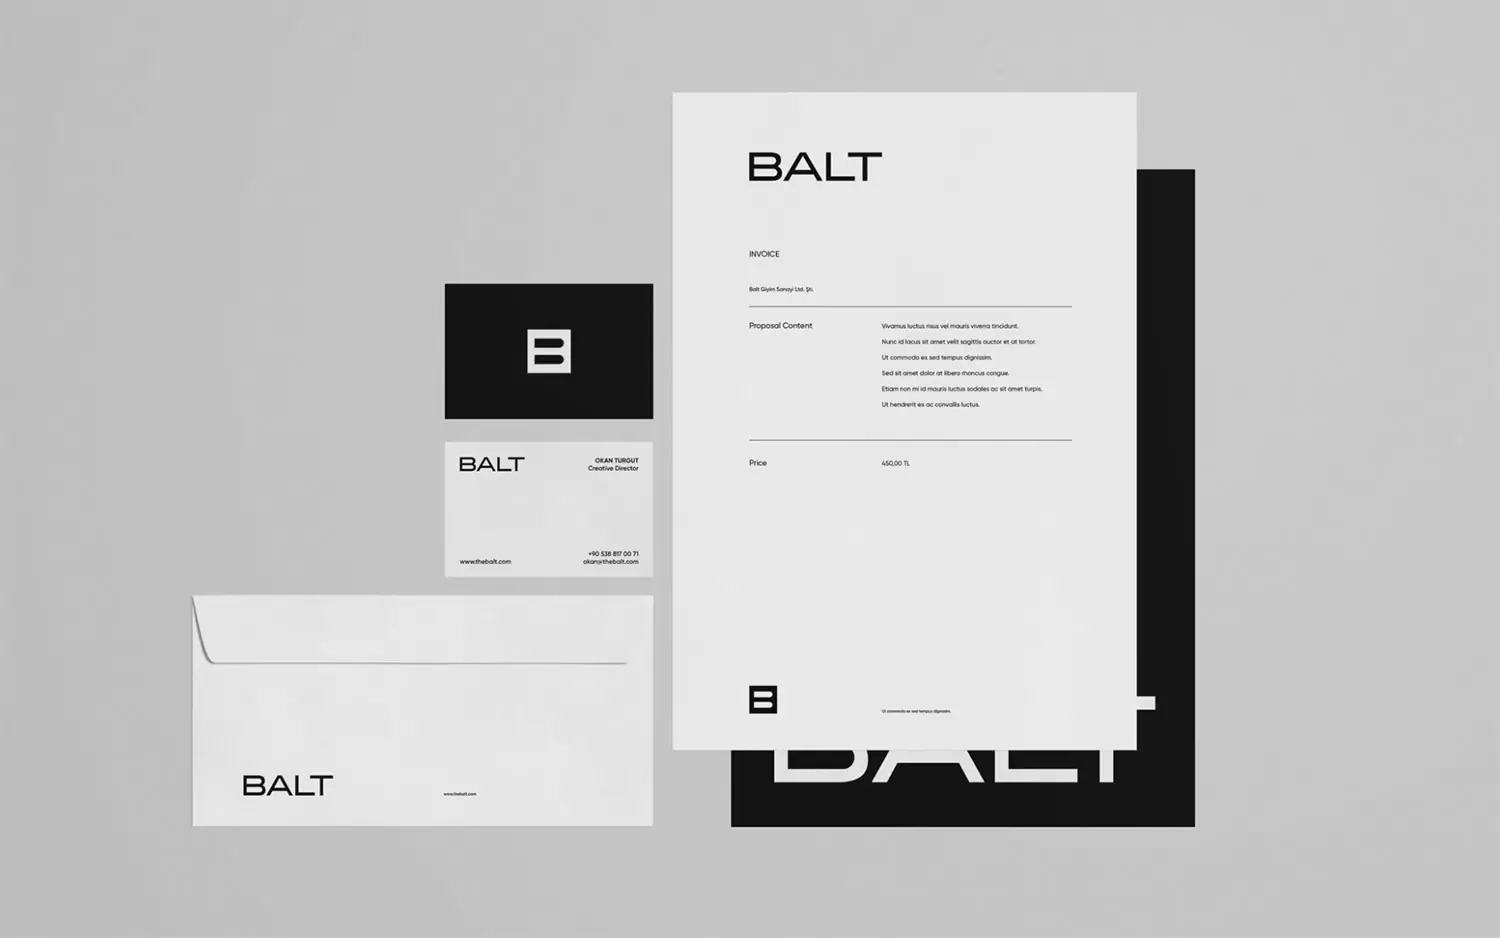 时尚品牌Balt视觉形象设计